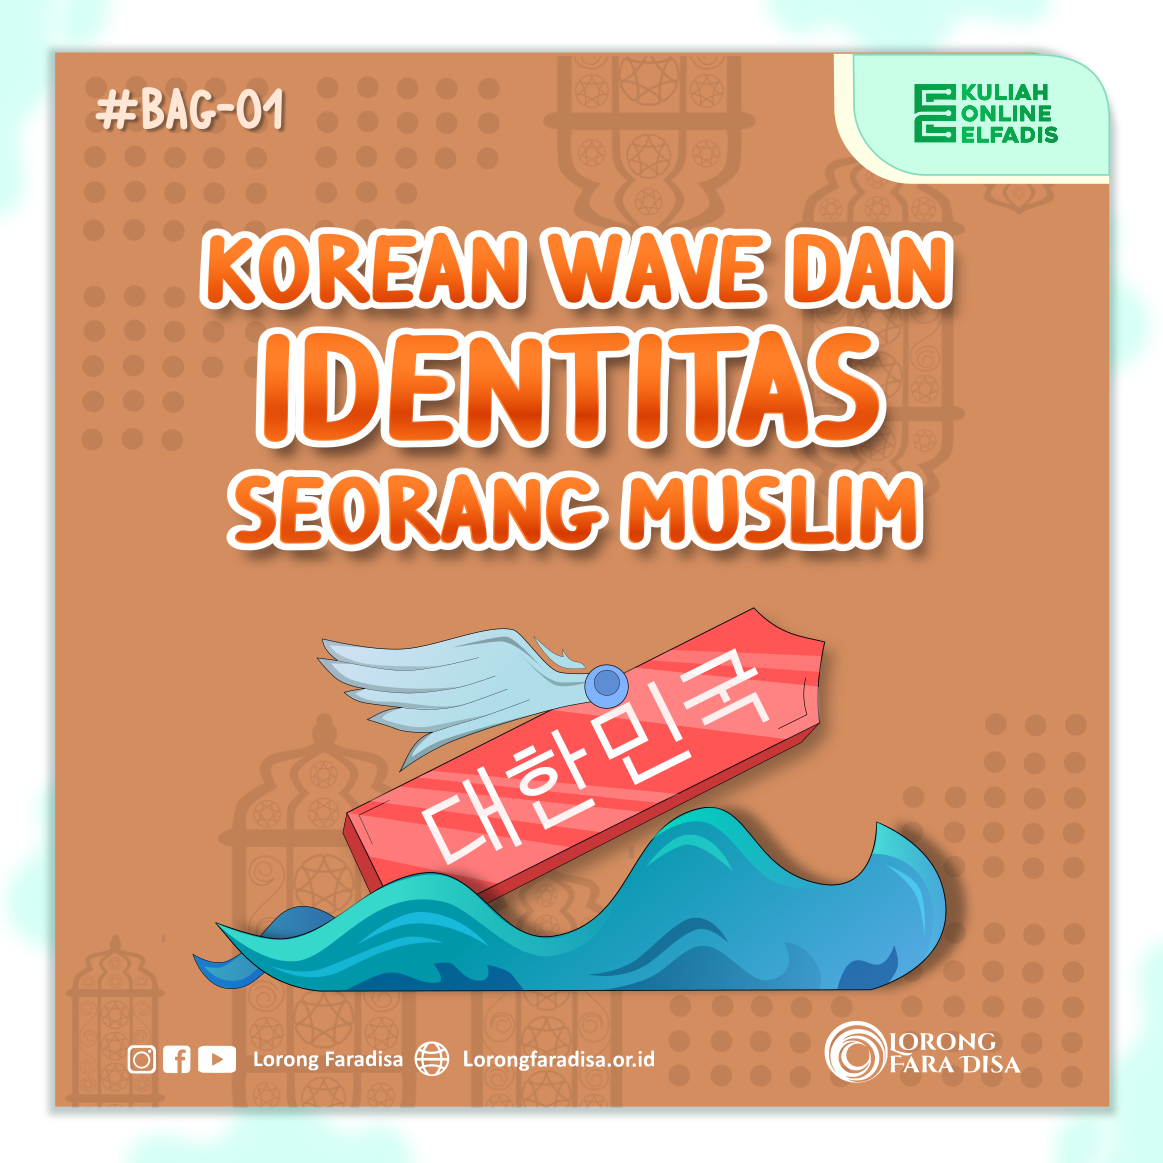 KOREAN WAVE DAN IDENTITAS SEORANG MUSLIM (PART 1)